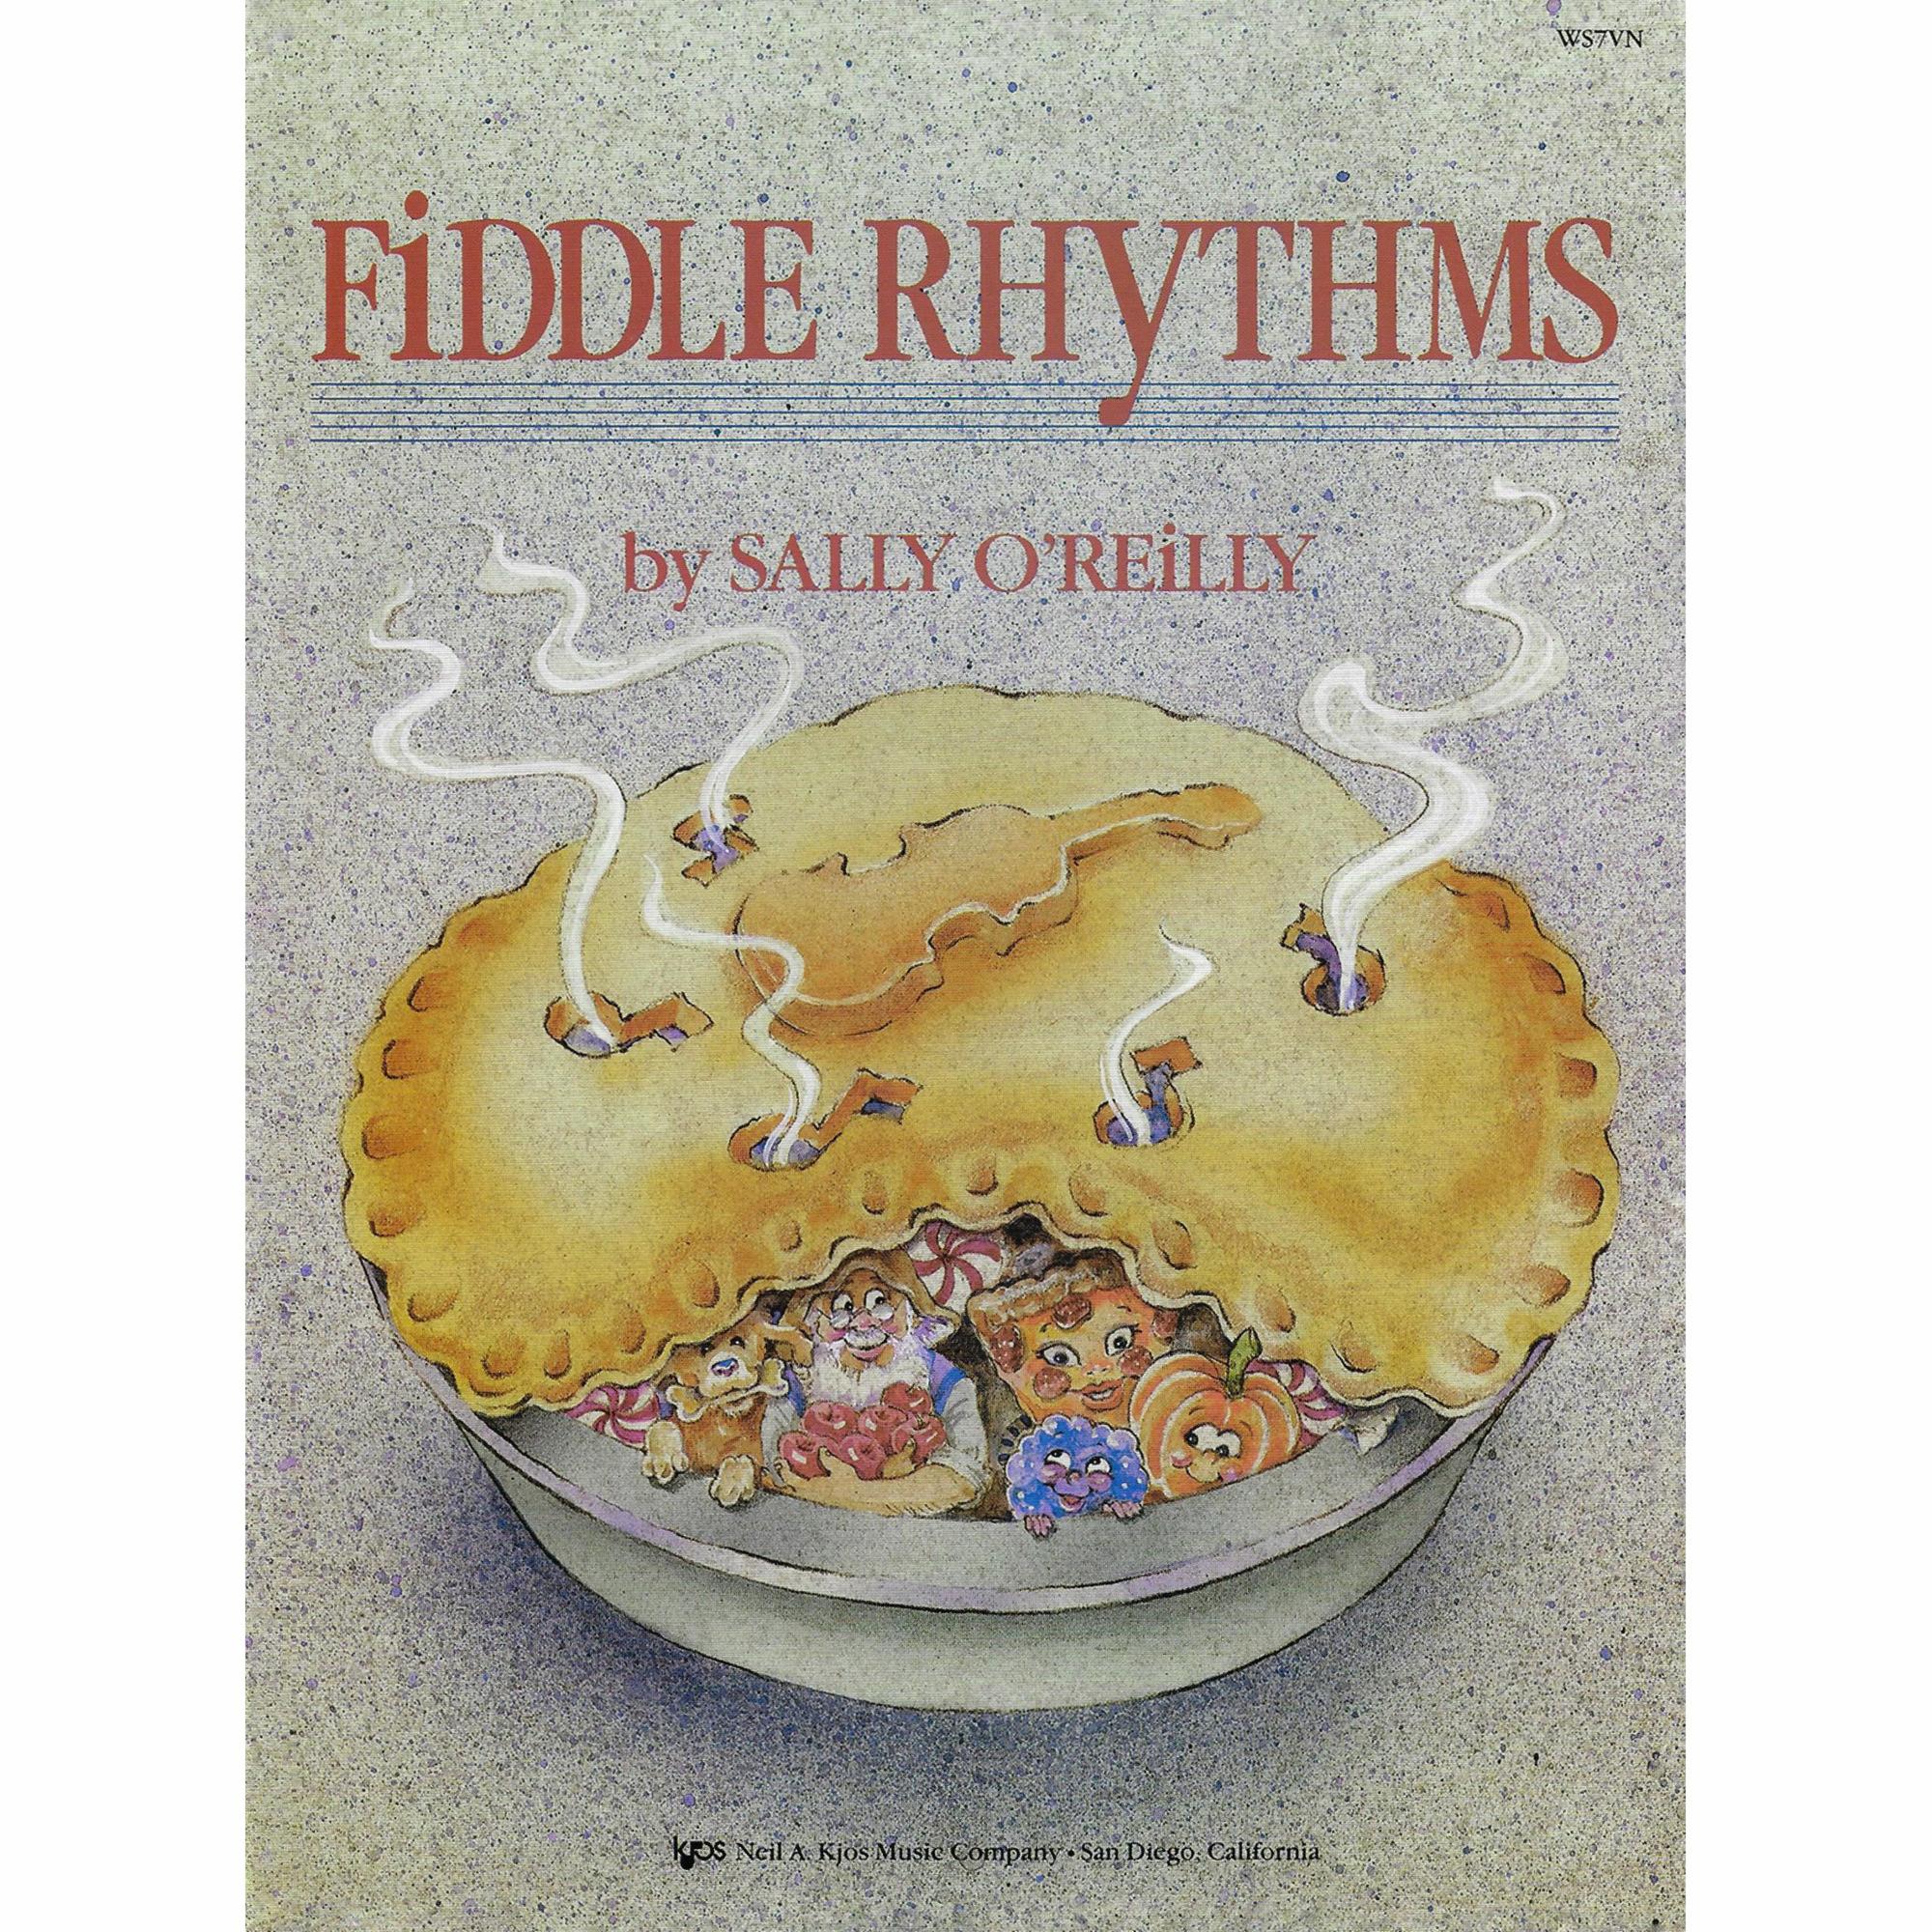 Fiddle Rhythms